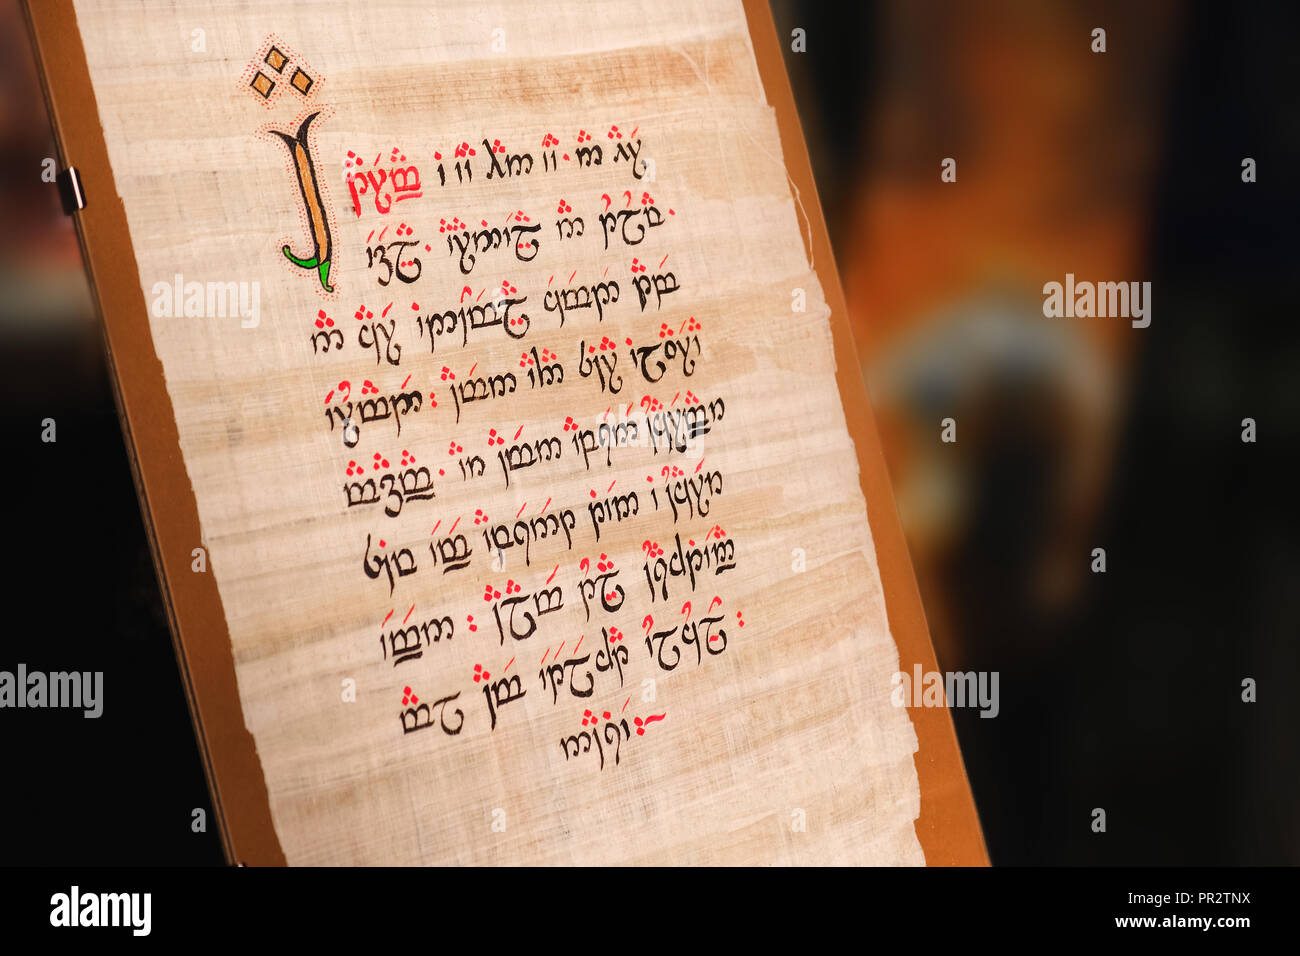 Manoscritto elfico testo scritto su pergamena di seta creato da Tolkien Foto Stock